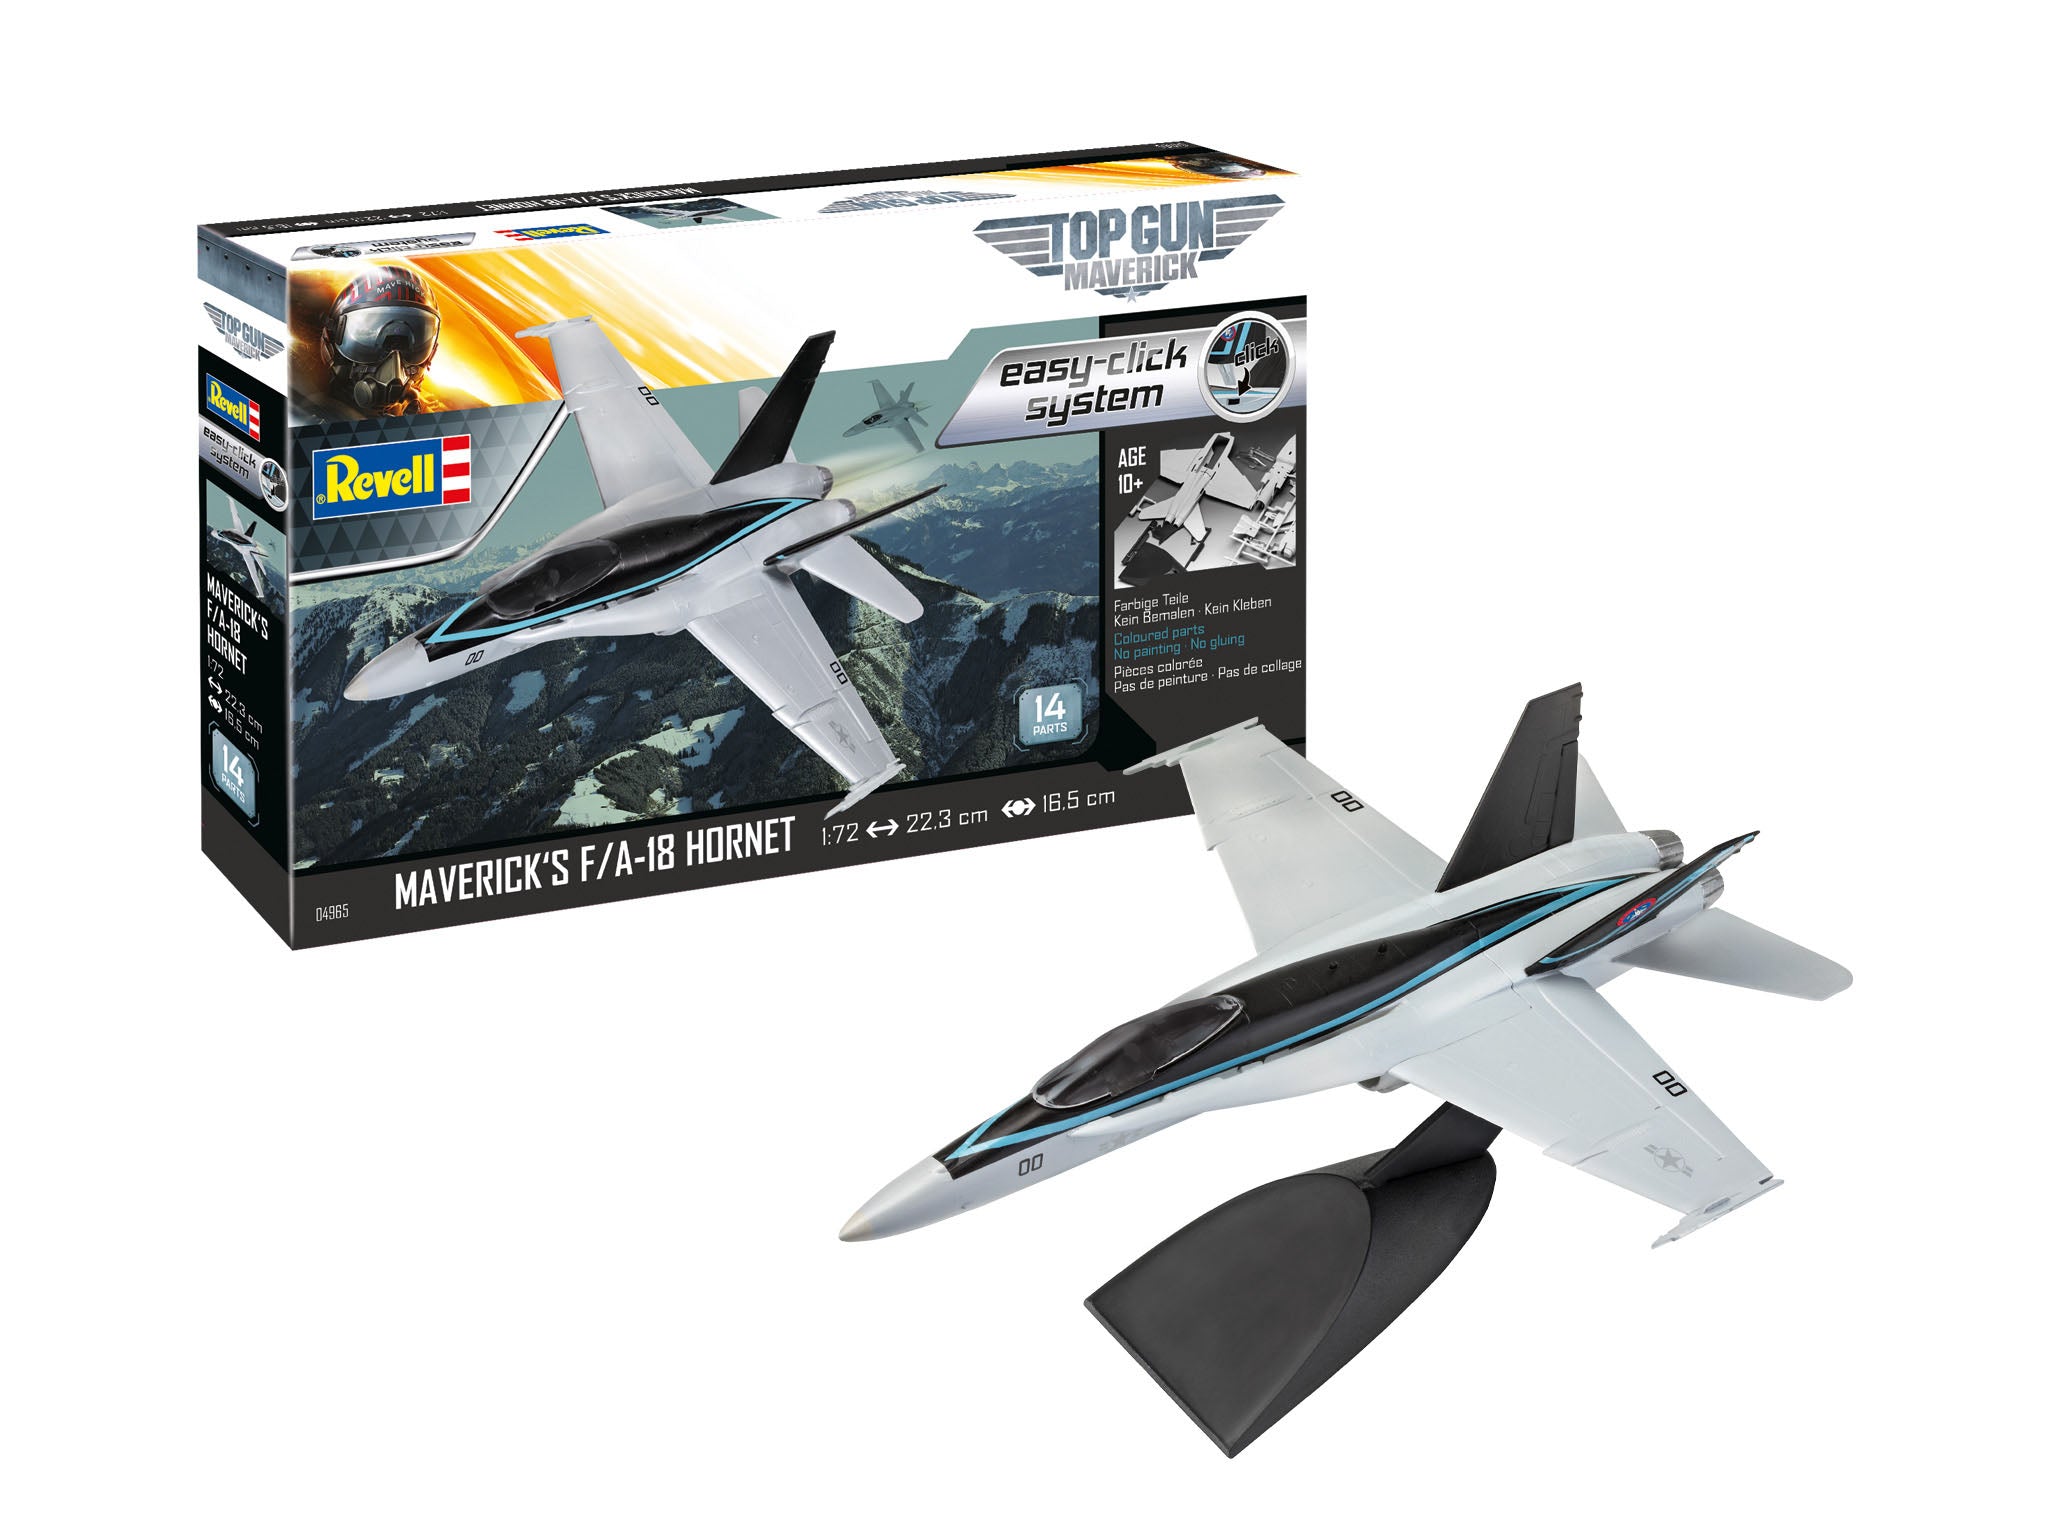 Plane Model Kit Revell Model Set F/A-18 HornetTop Gun easy-click-system 1:72